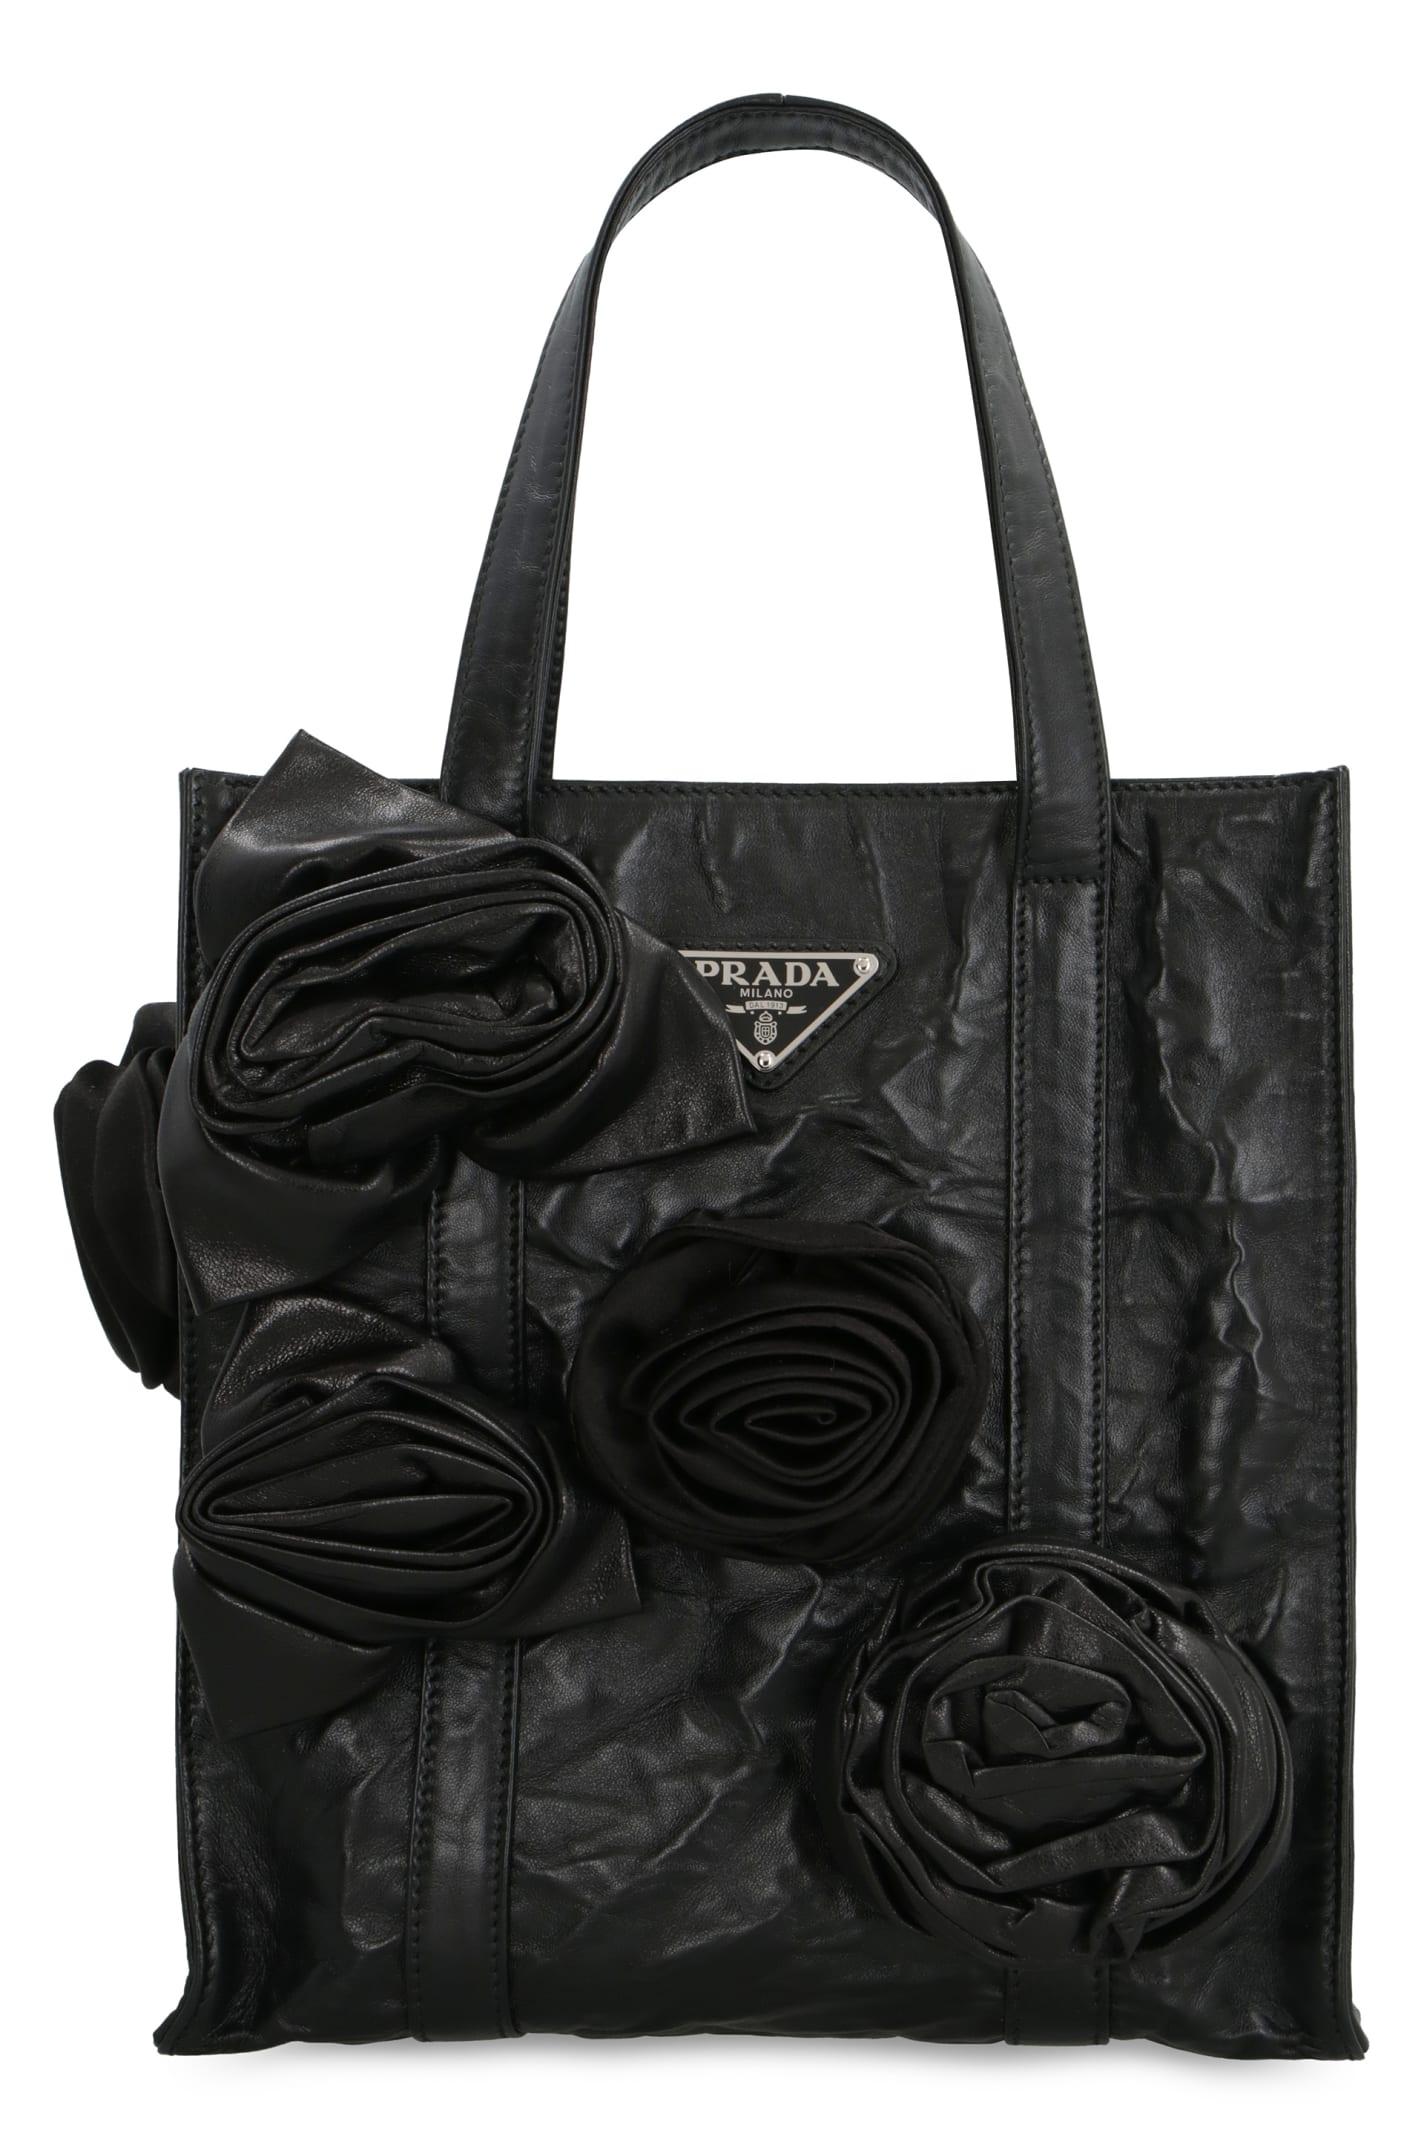 Prada Small Galleria Leather Tote Bag - Farfetch